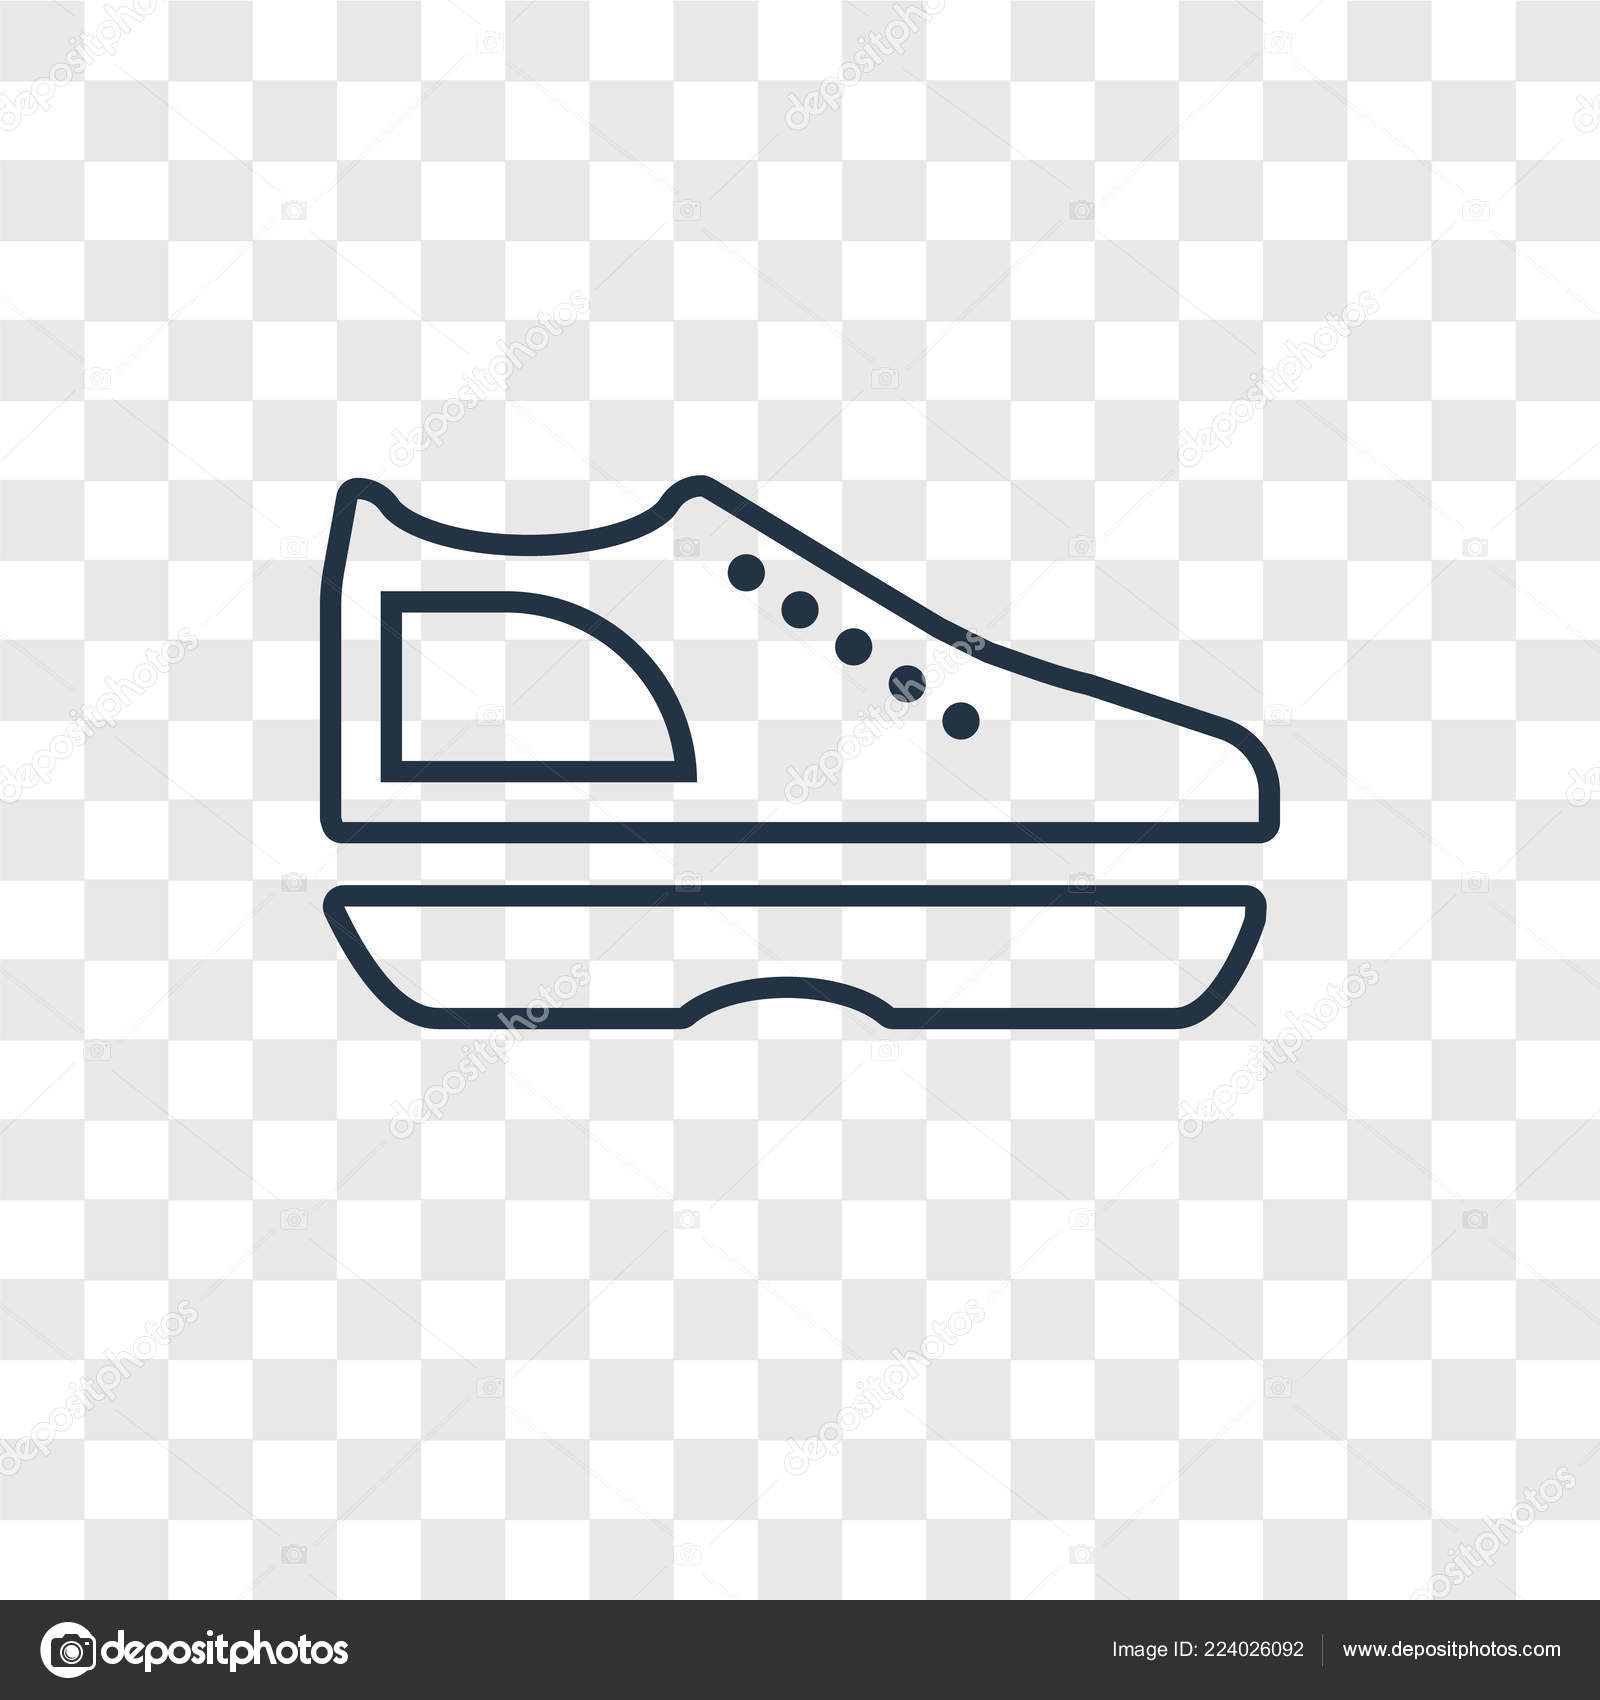 shoe icon vector